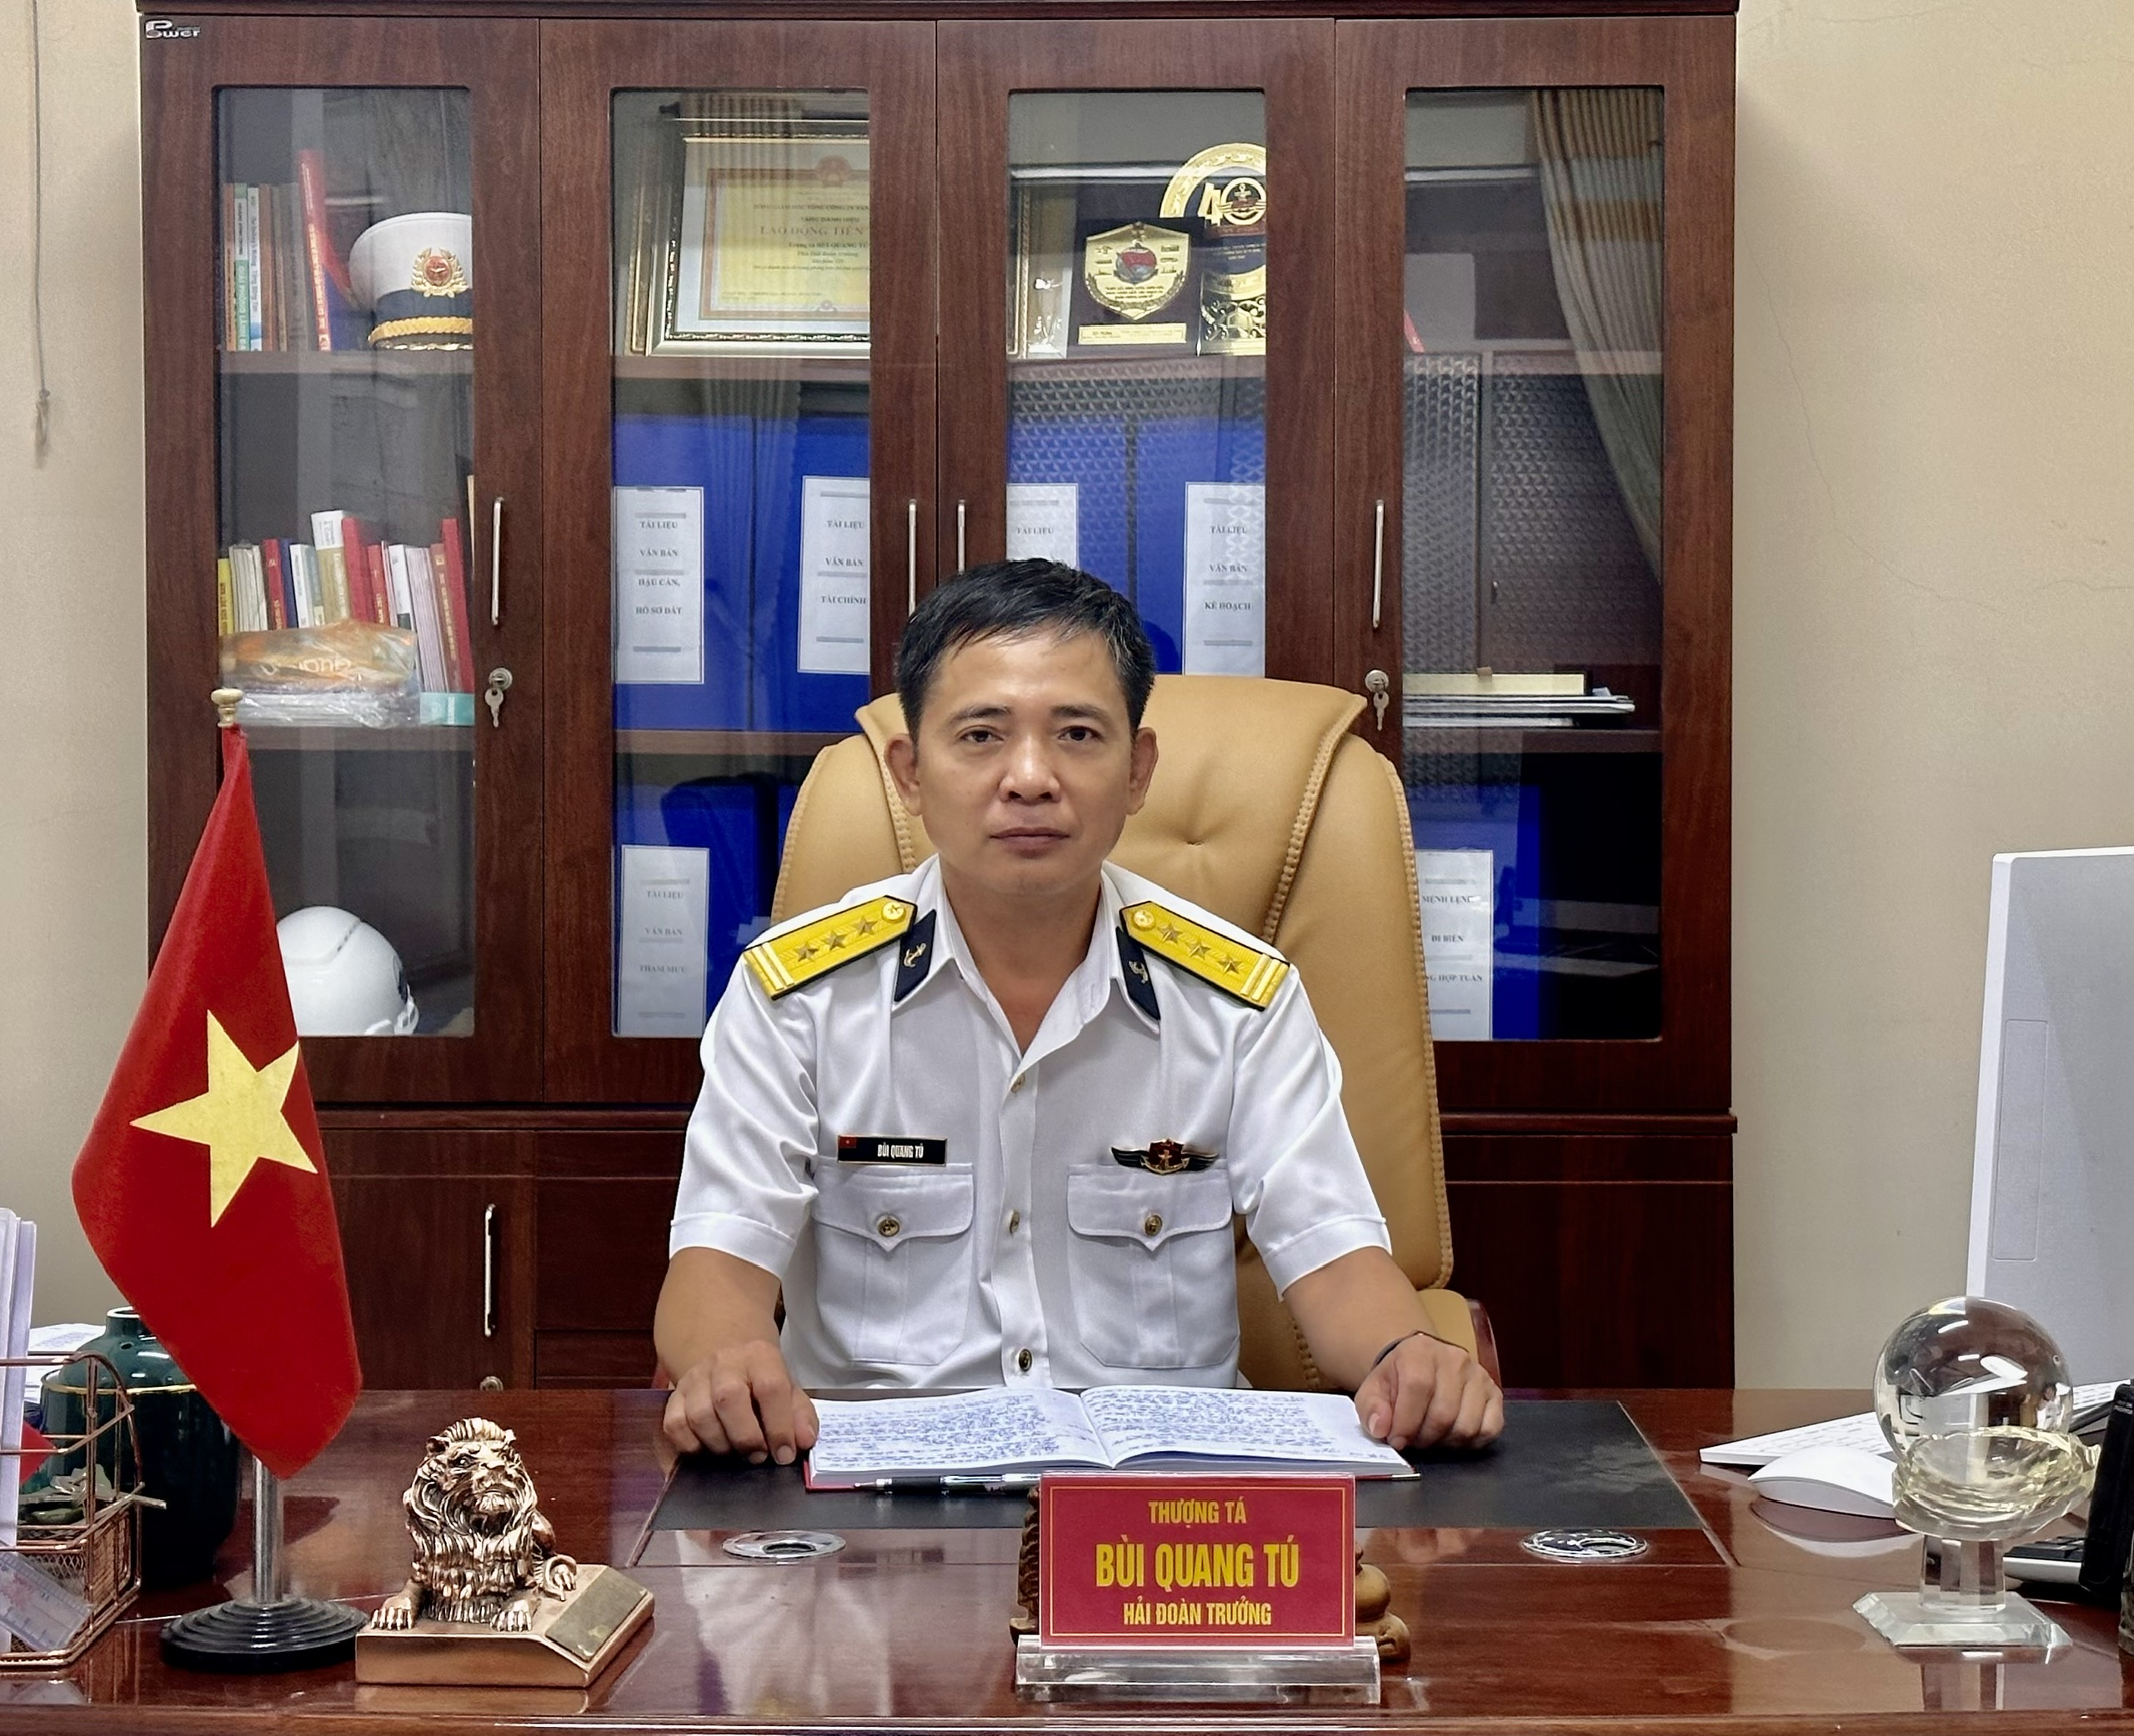 Thượng tá Bùi Quang Tú, Hải đoàn trưởng Hải đoàn 129 Hải quân.